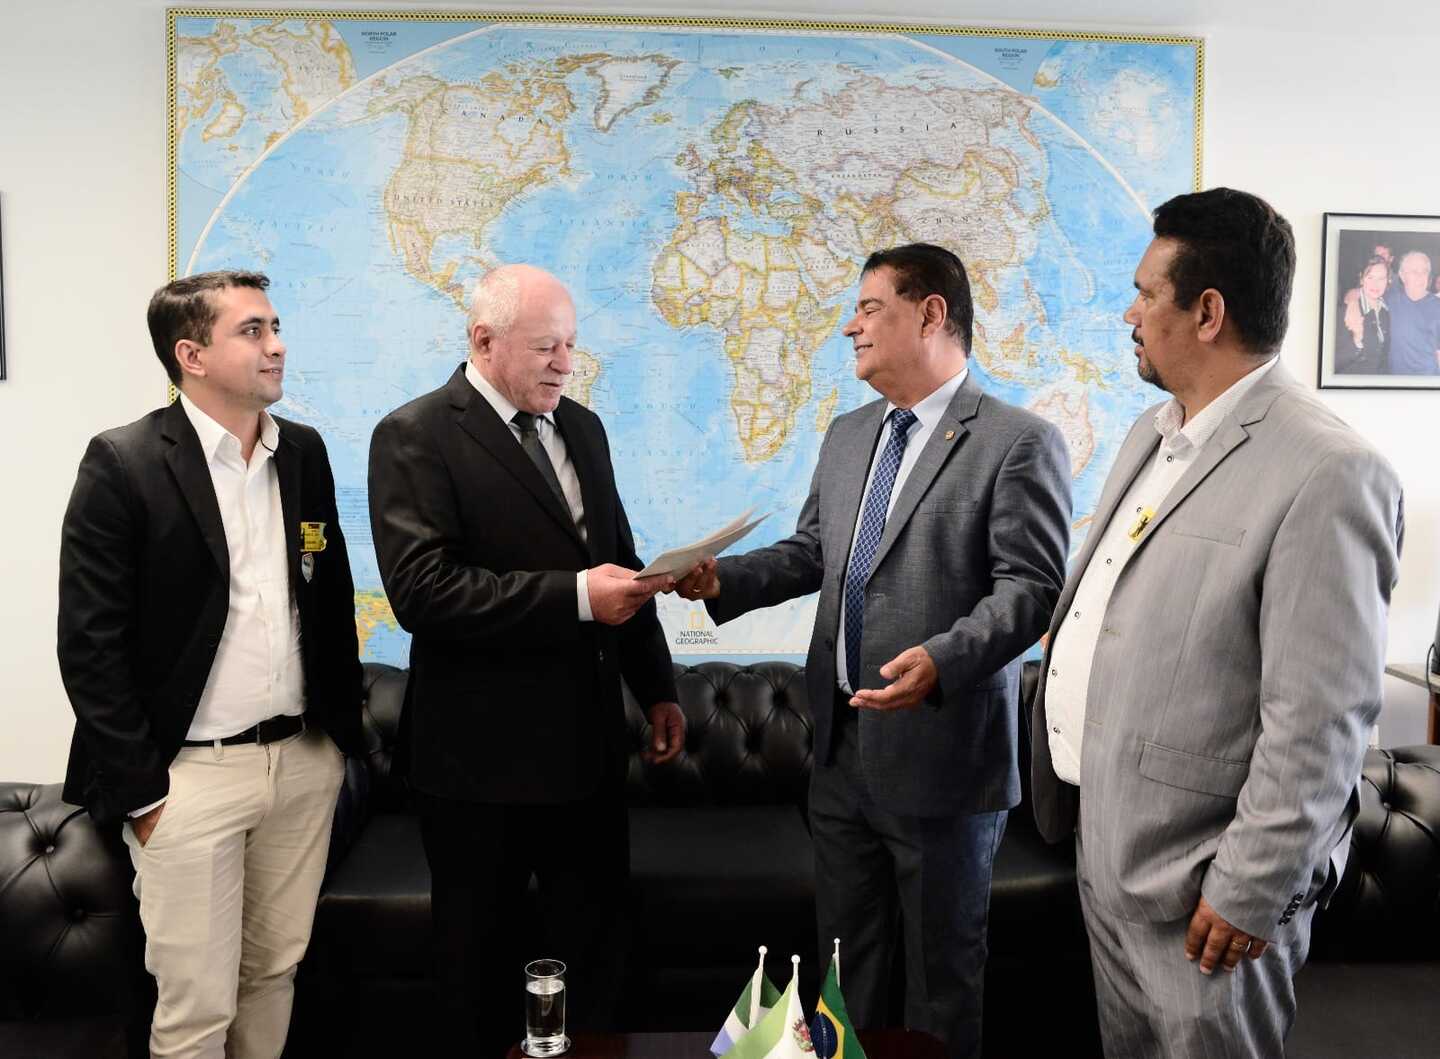 O Prefeito Valdir Sartor ao lado do Senador Nelsinho Trad, com apoio do Secretário de Educação Adriano Pimentel e do Vereador Juninho Lima.